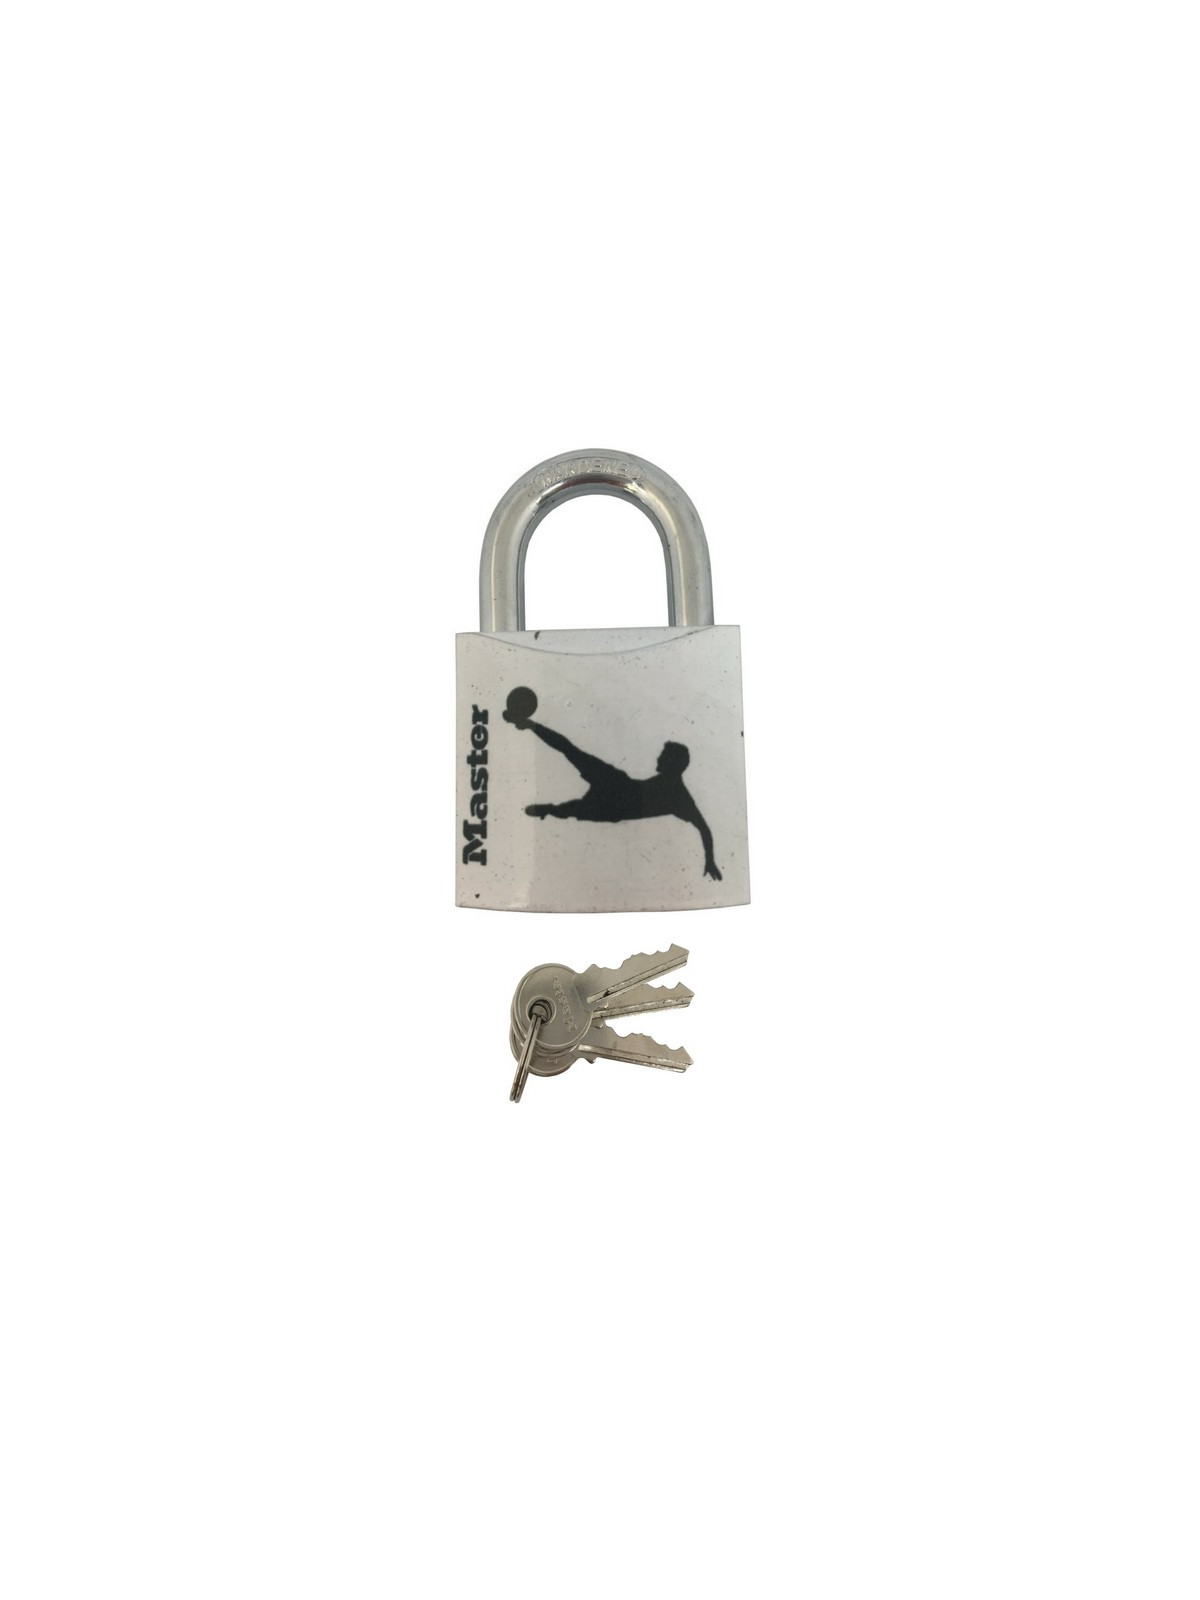 Master Lock-Boîte à clé 5406D, cadenas à 3 chiffres, stockage BLOprédire,  boîte à verrou portable